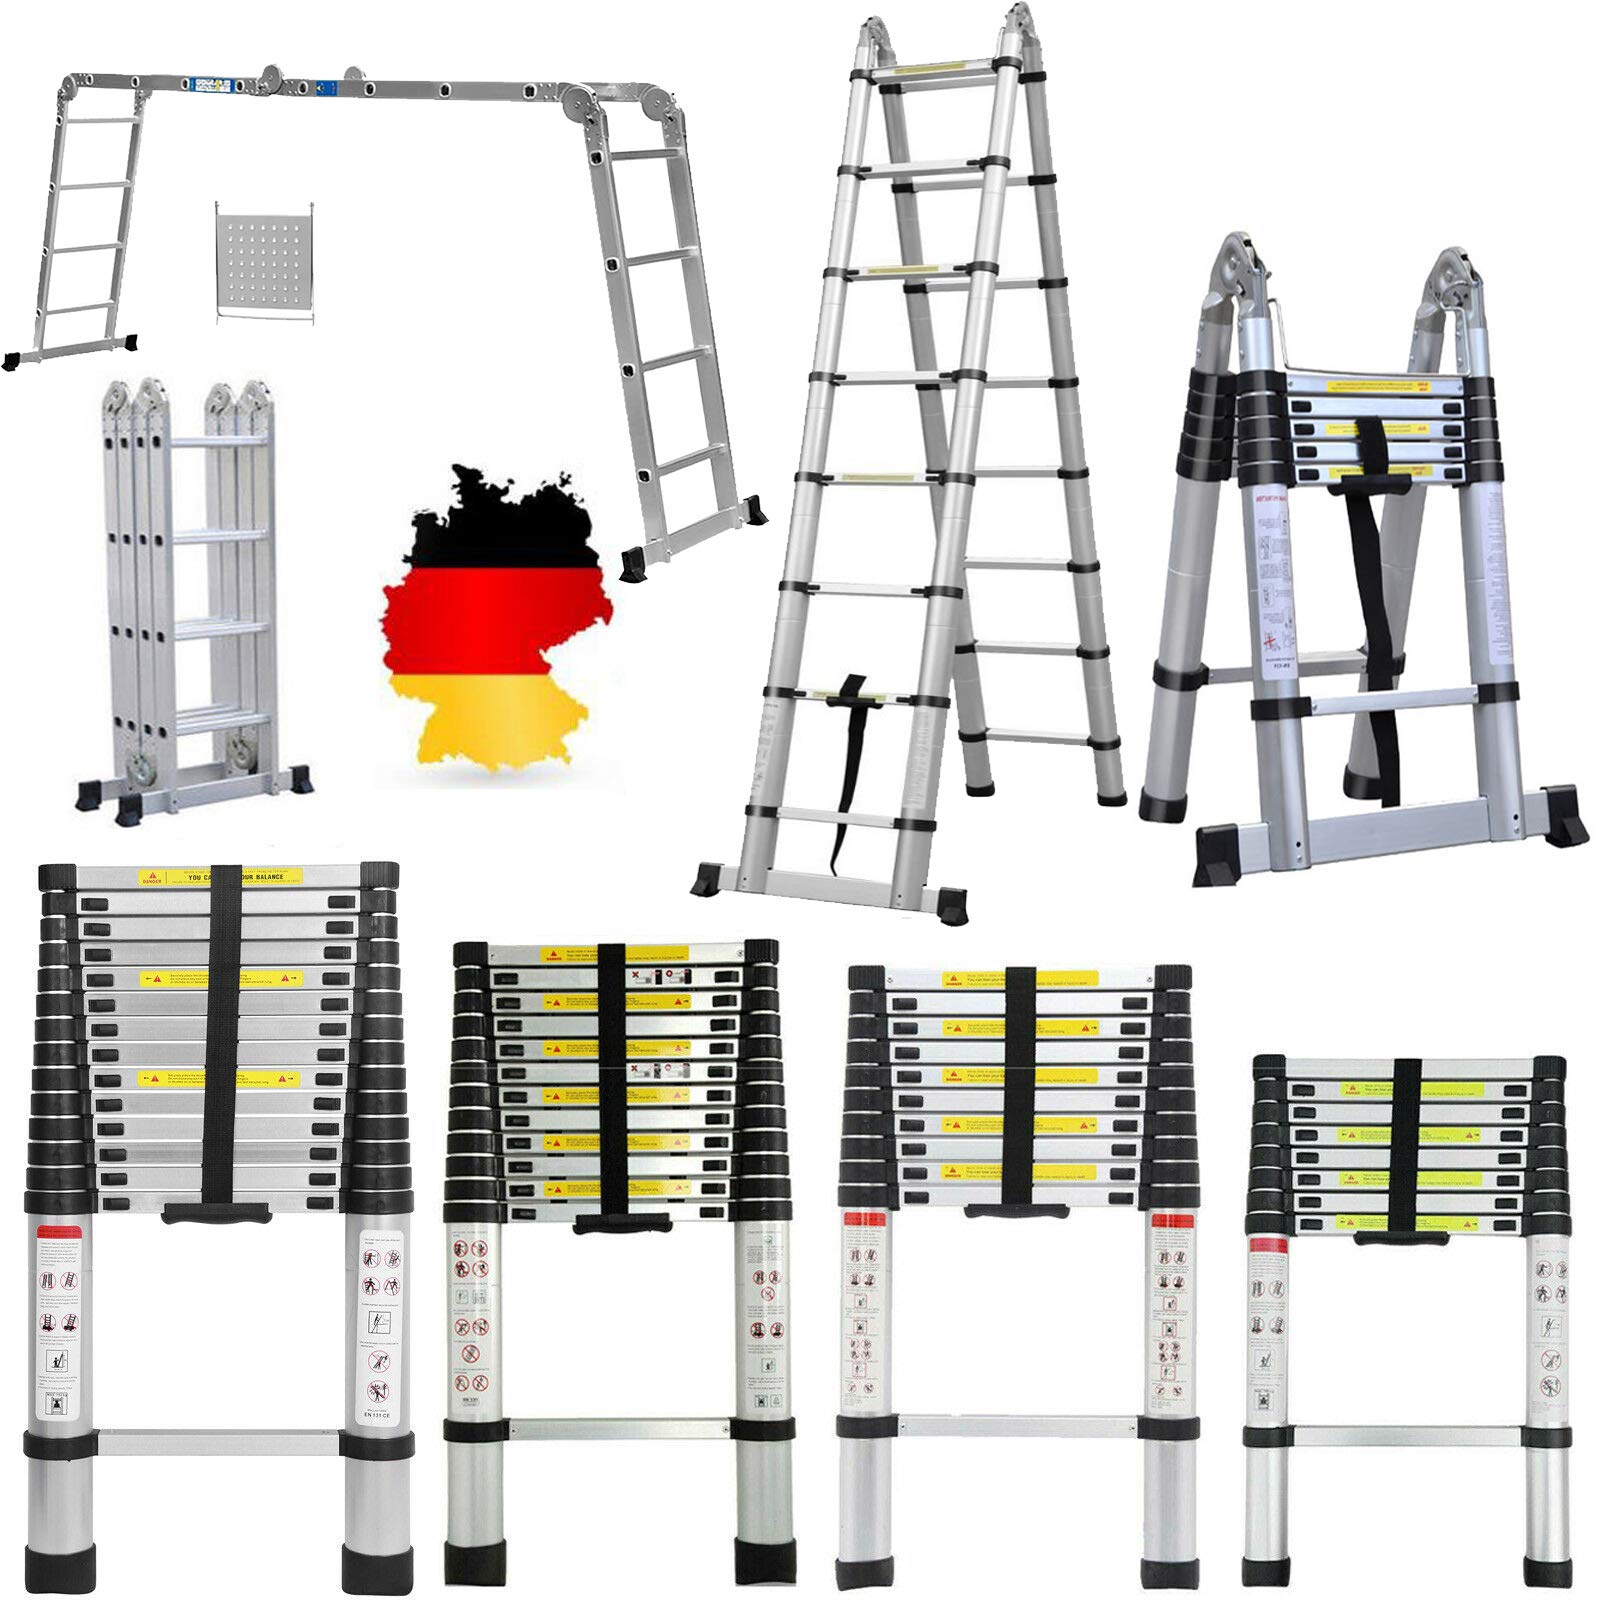 Teleskopleiter 5m Klappbar Alu Leiter, Rutschfester Ausziehbar Aluleiter, 16 Sprossenleiter mit Stabilisator - Gerade Leiter & A-Rahmen Klappleiter, 150 kg Belastbarkeitr